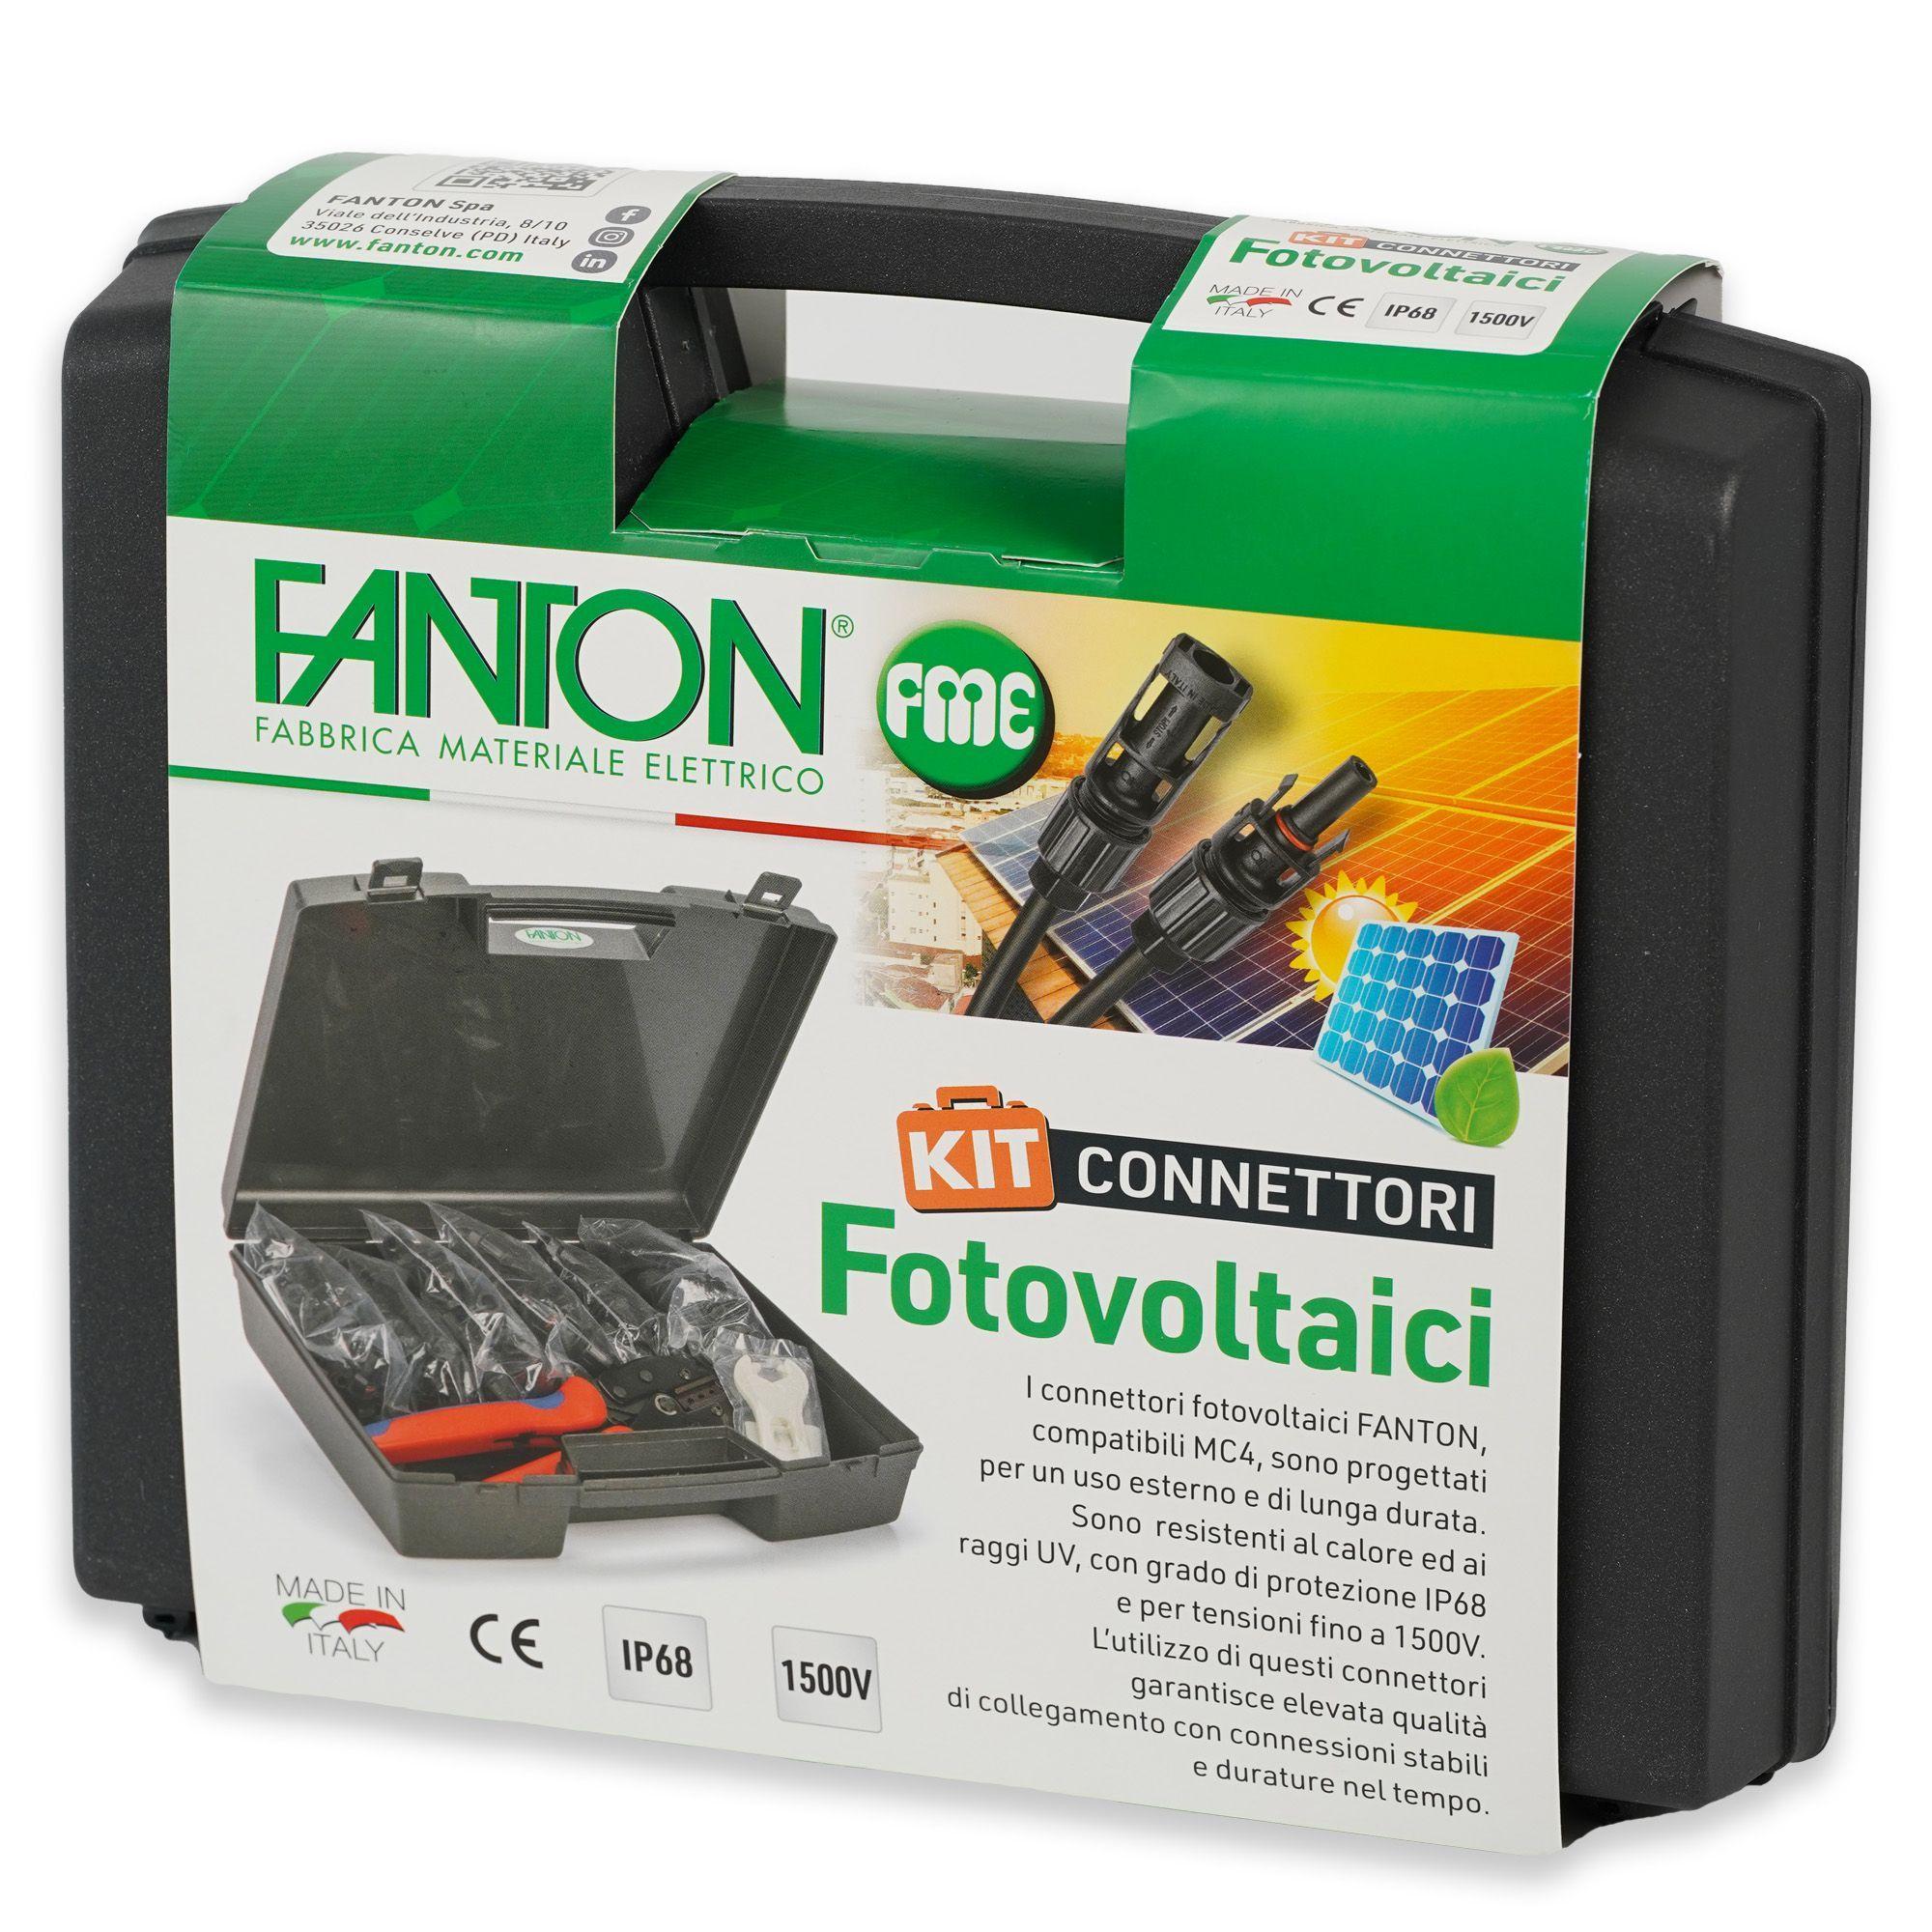 fanton s.p.a. fanton spa kit connettori fotovoltaici fm4 30maschi+30femmine + pinza + coppia chiavi valigetta kit fotovoltaico a99999